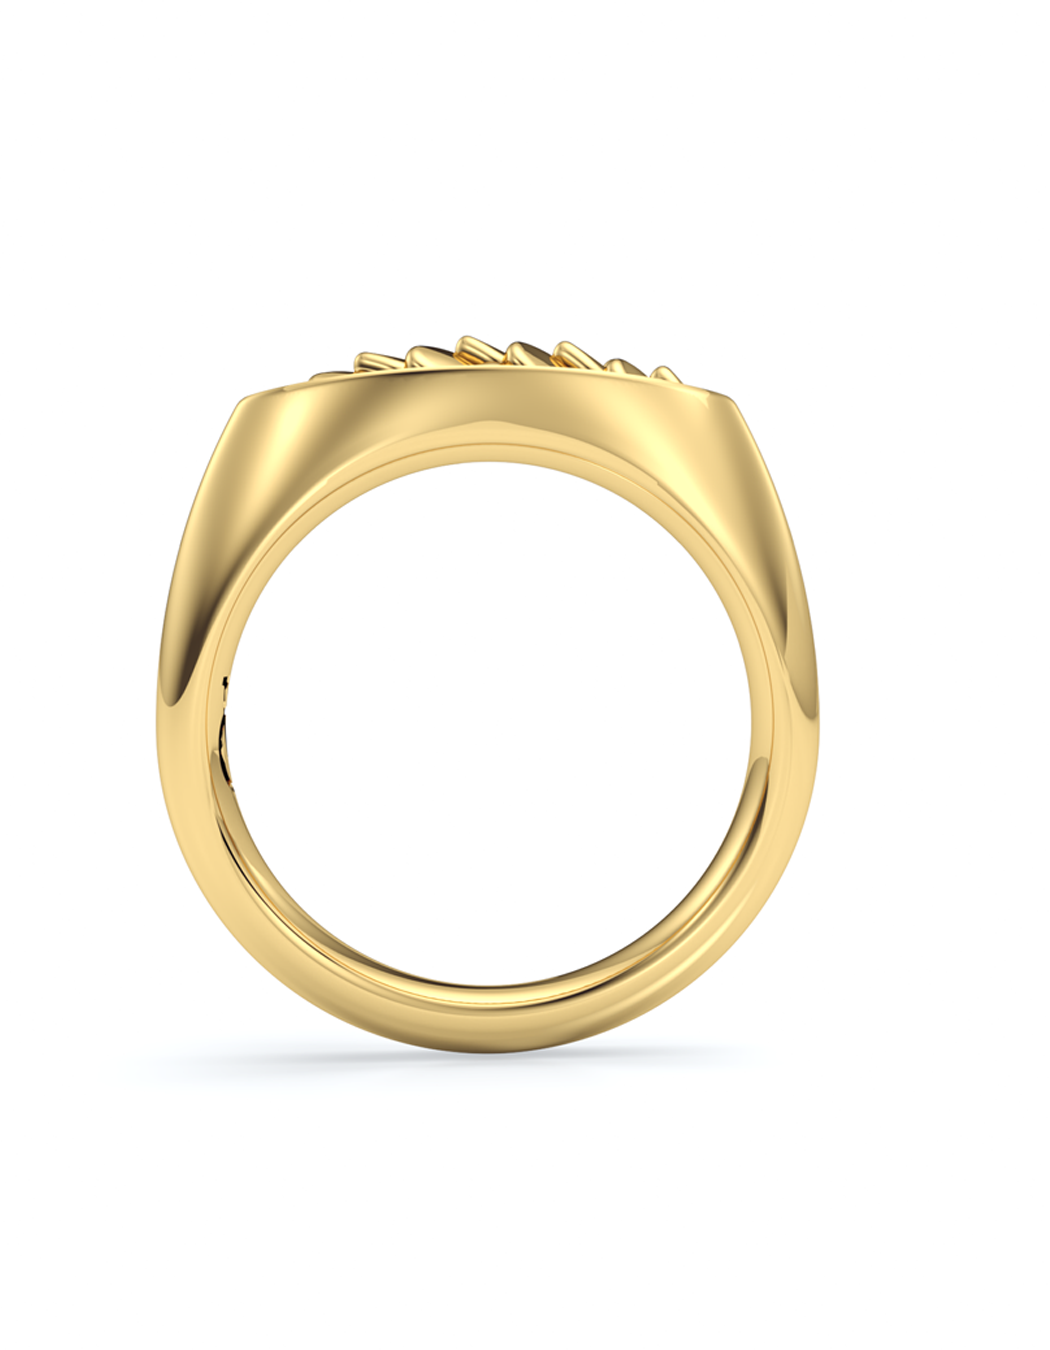 Upscale Iguana Signet Ring 14k / 18k Gold